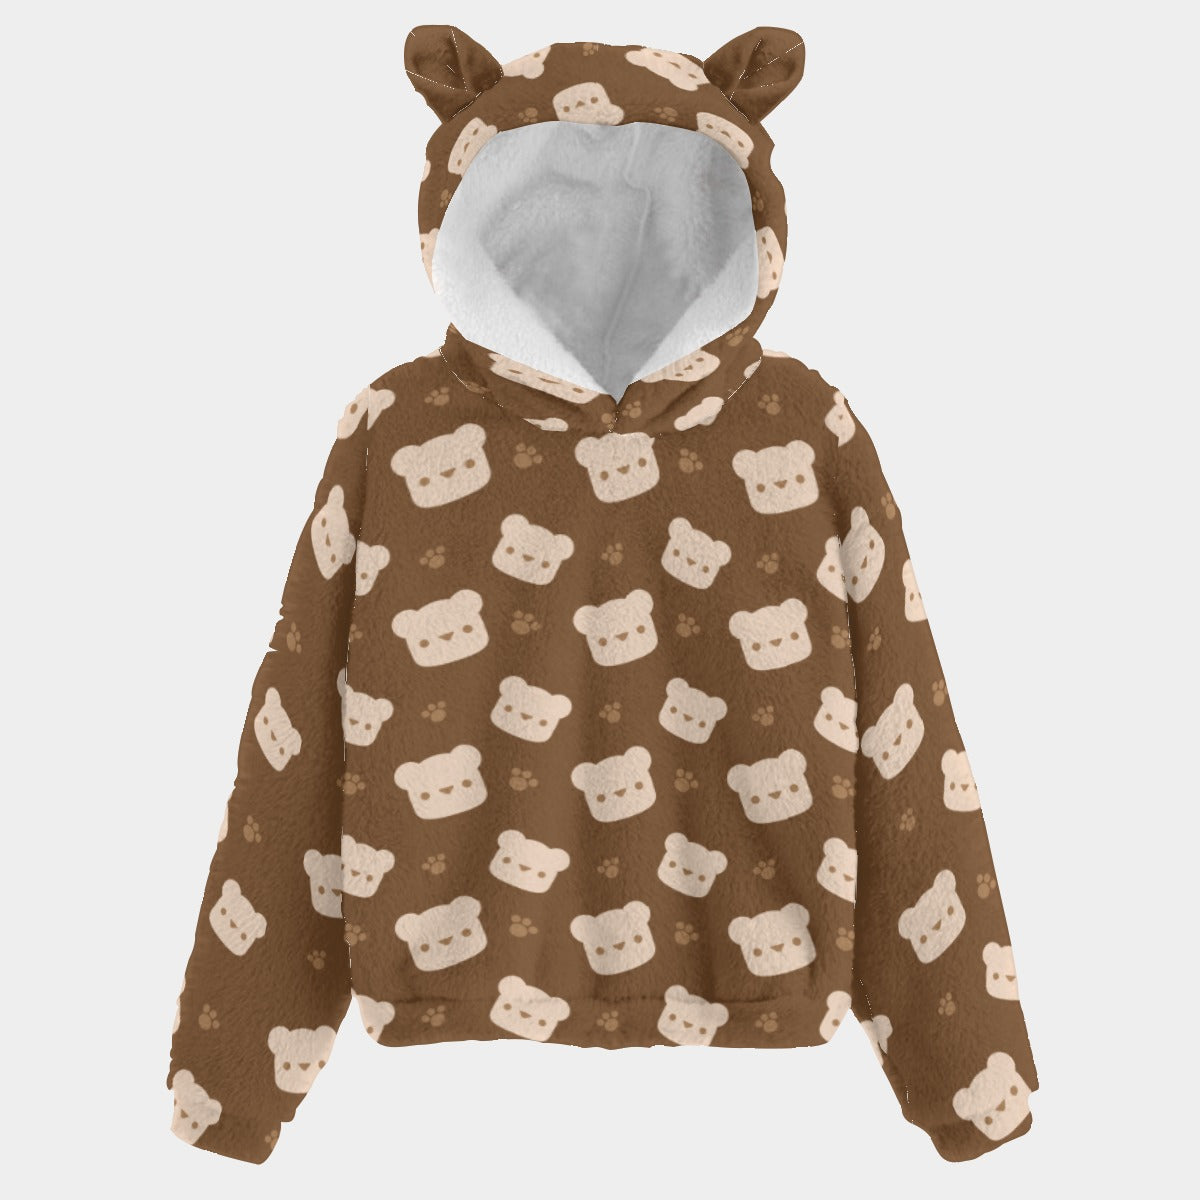 Cute Teddy Bear Pattern Kids Soft Fleece Sweatshirt With Ears-Brown